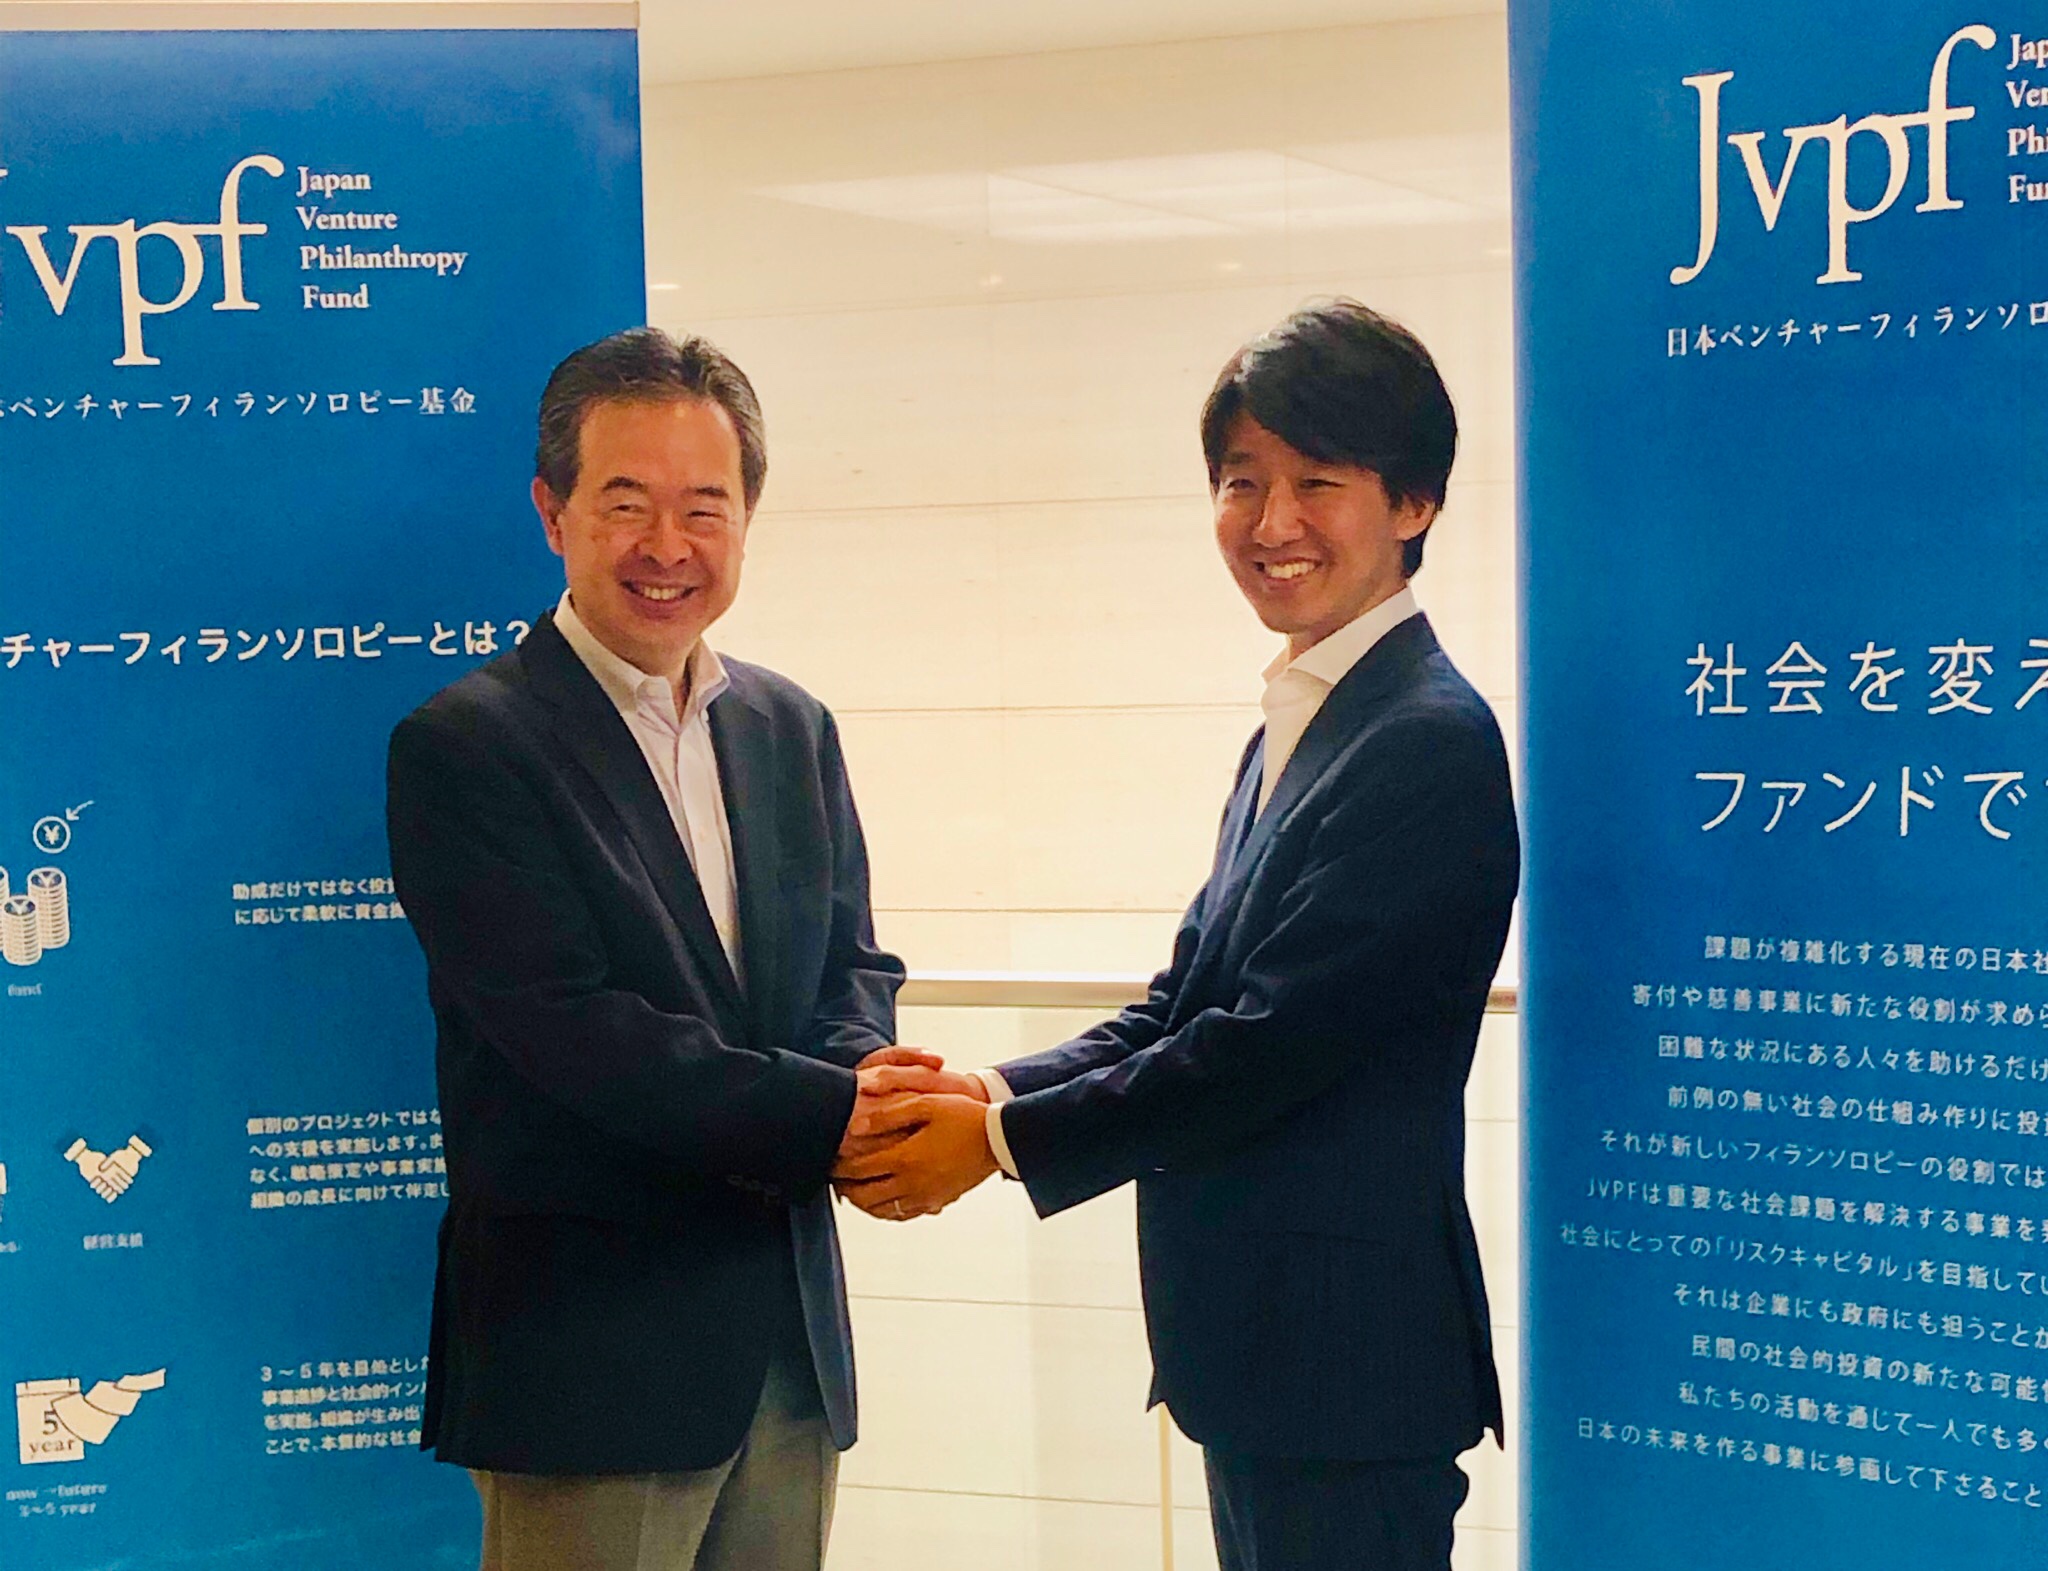 【プレスリリース】日本最大級の社会的投資ファンド「日本ベンチャーフィランソロピー基金」と支援契約を締結